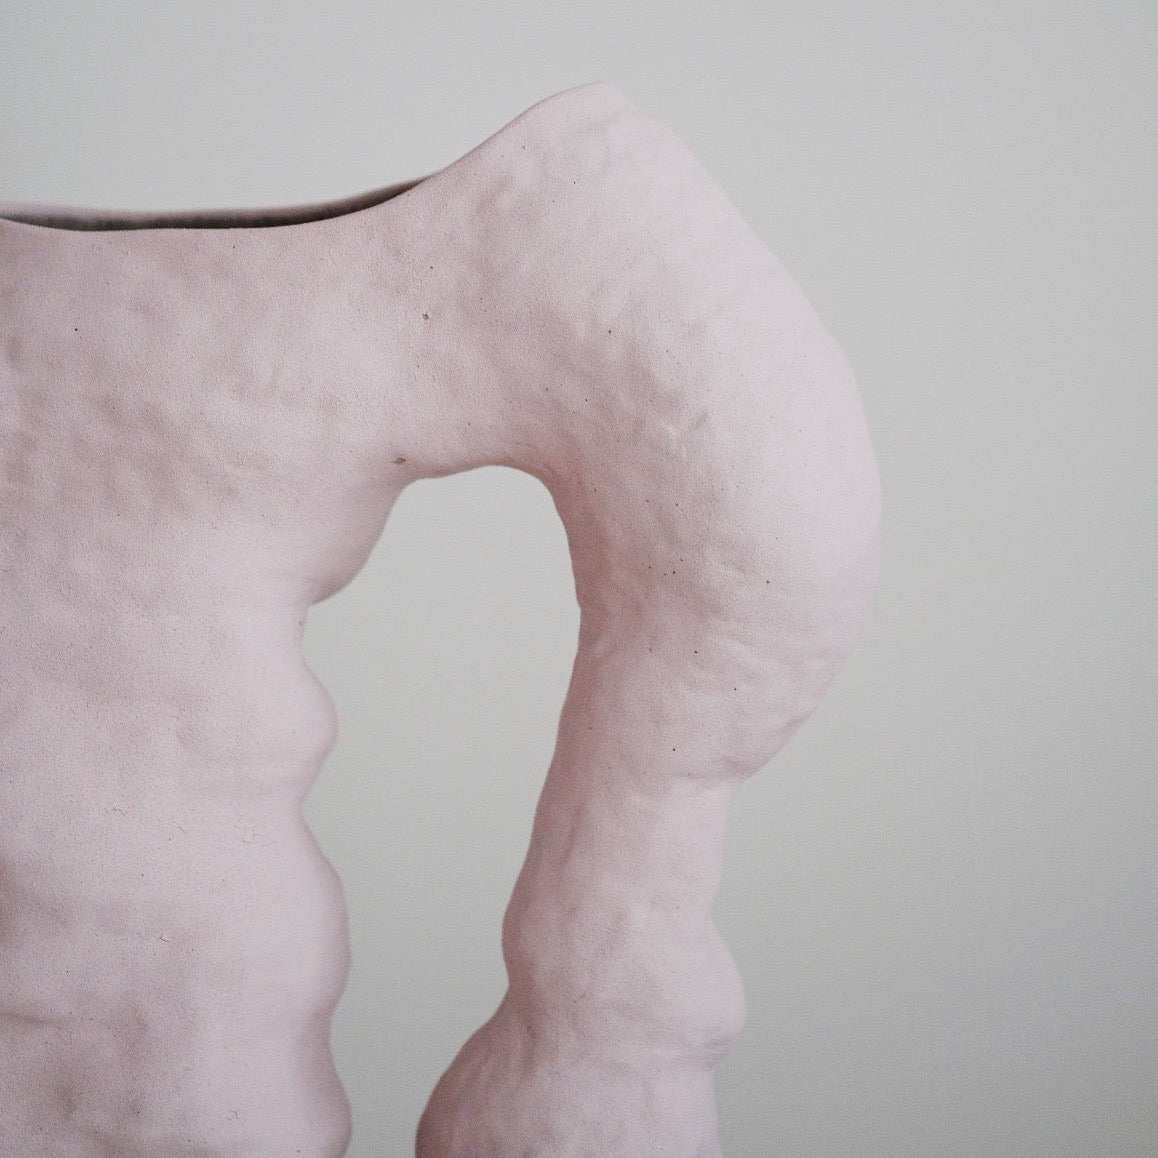 Upper Body Vase, 2021 - Pink